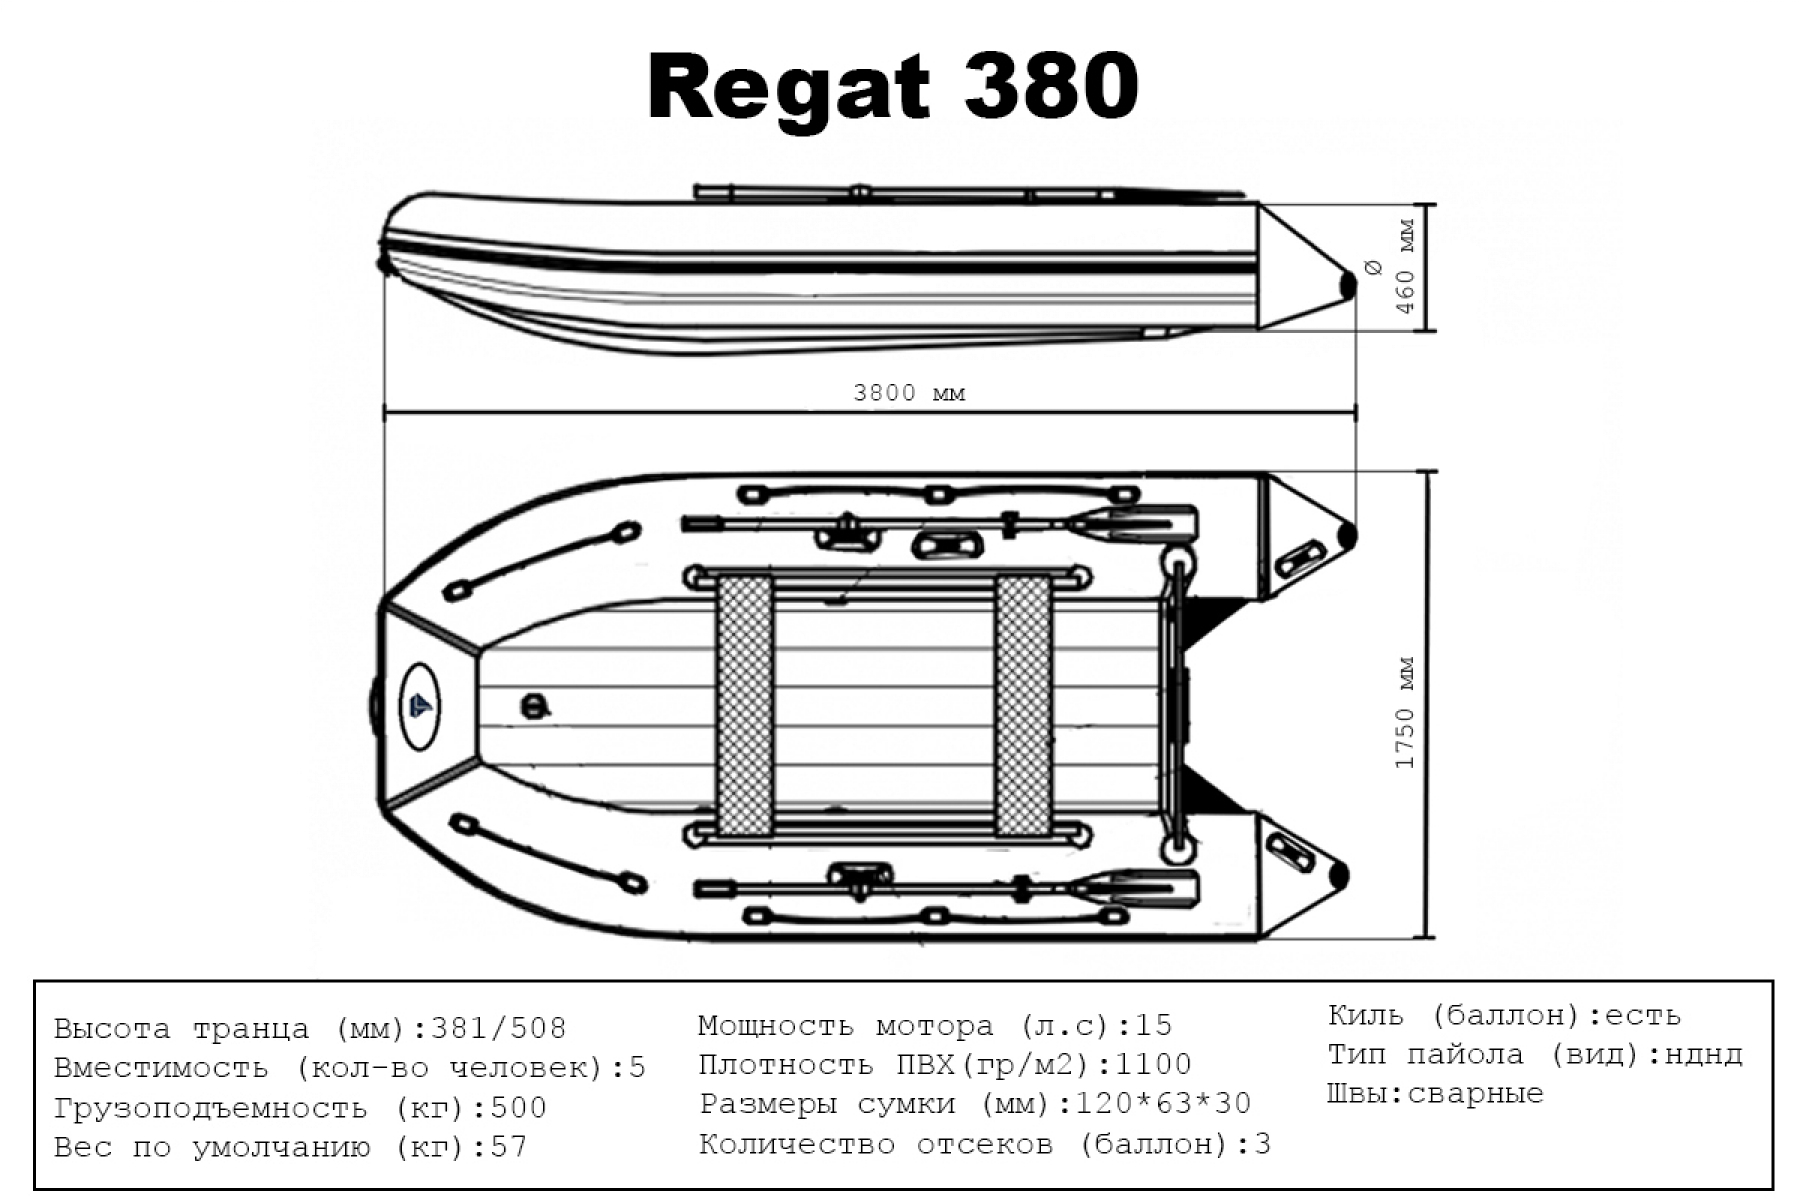 Big Boat Регат 380 НДНД